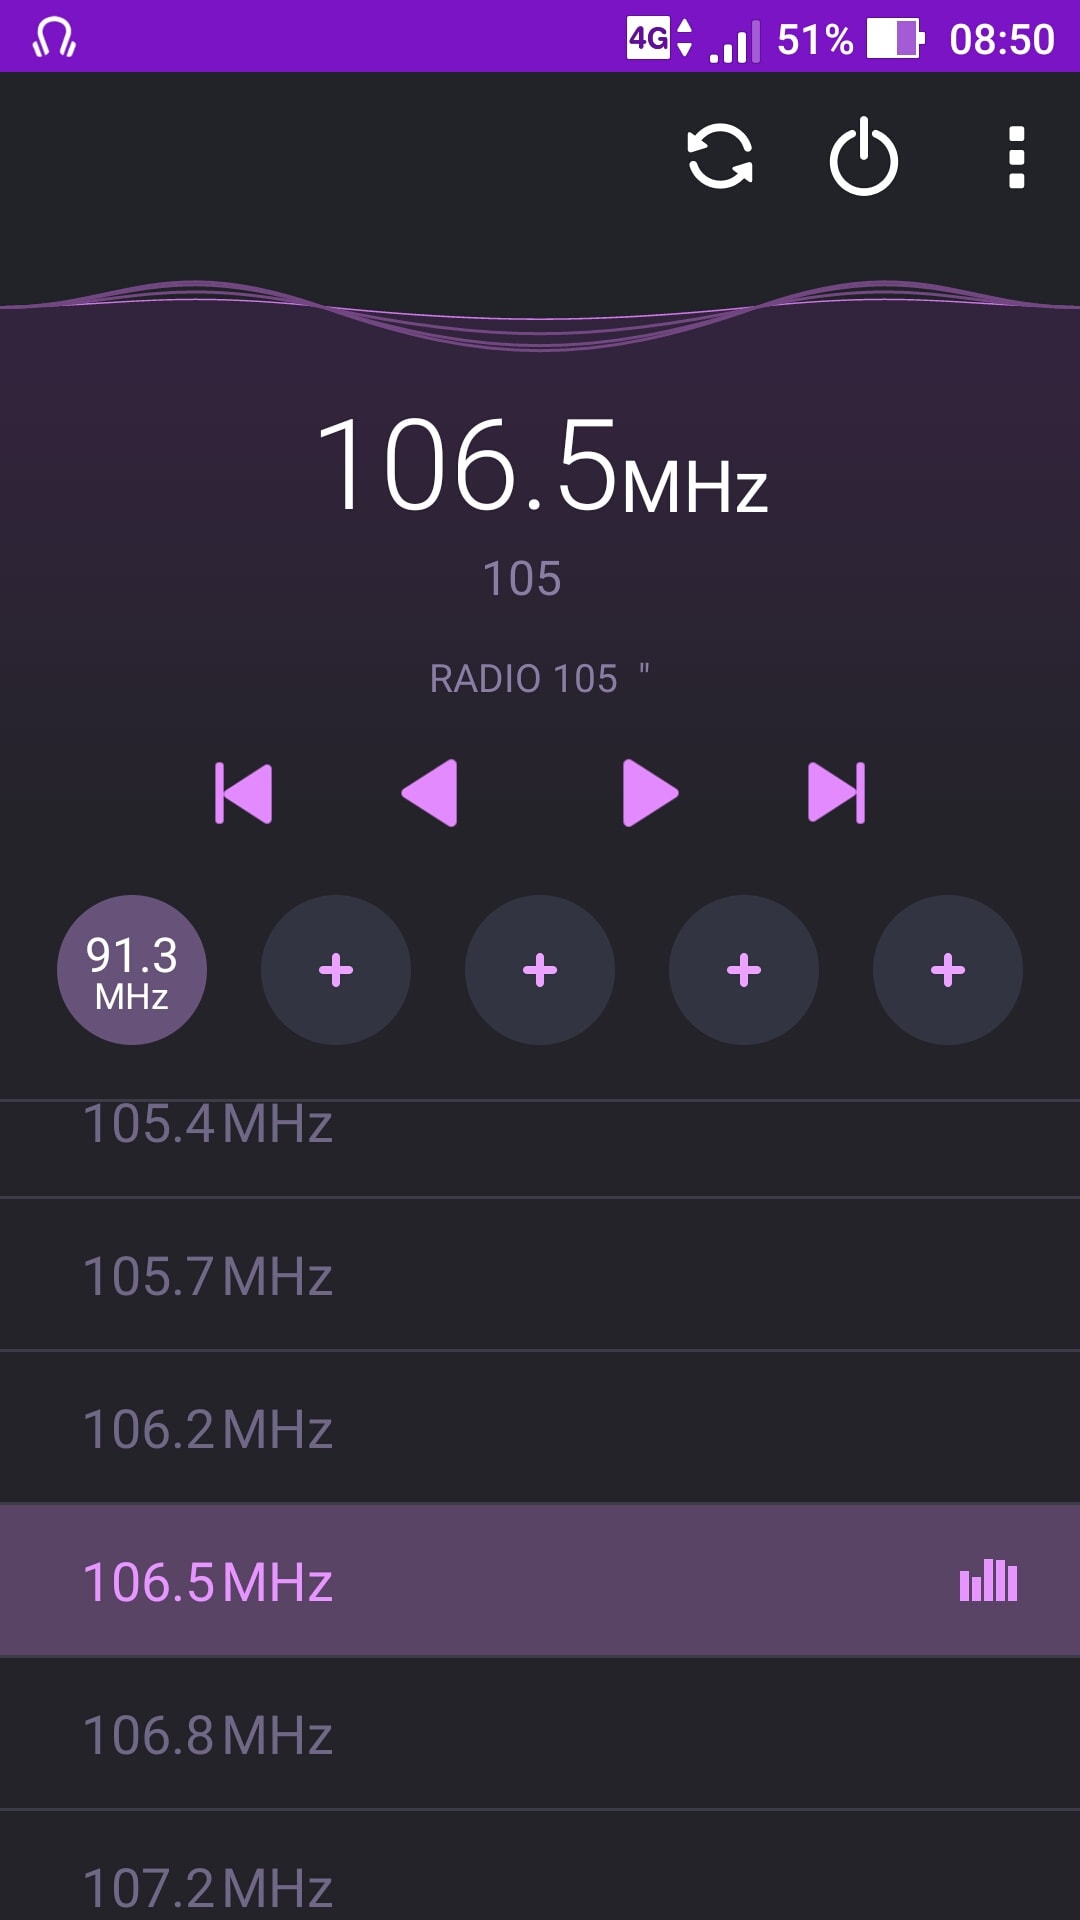 Radio 105 sostituisce Virgin Radio sui 106.5 Fm